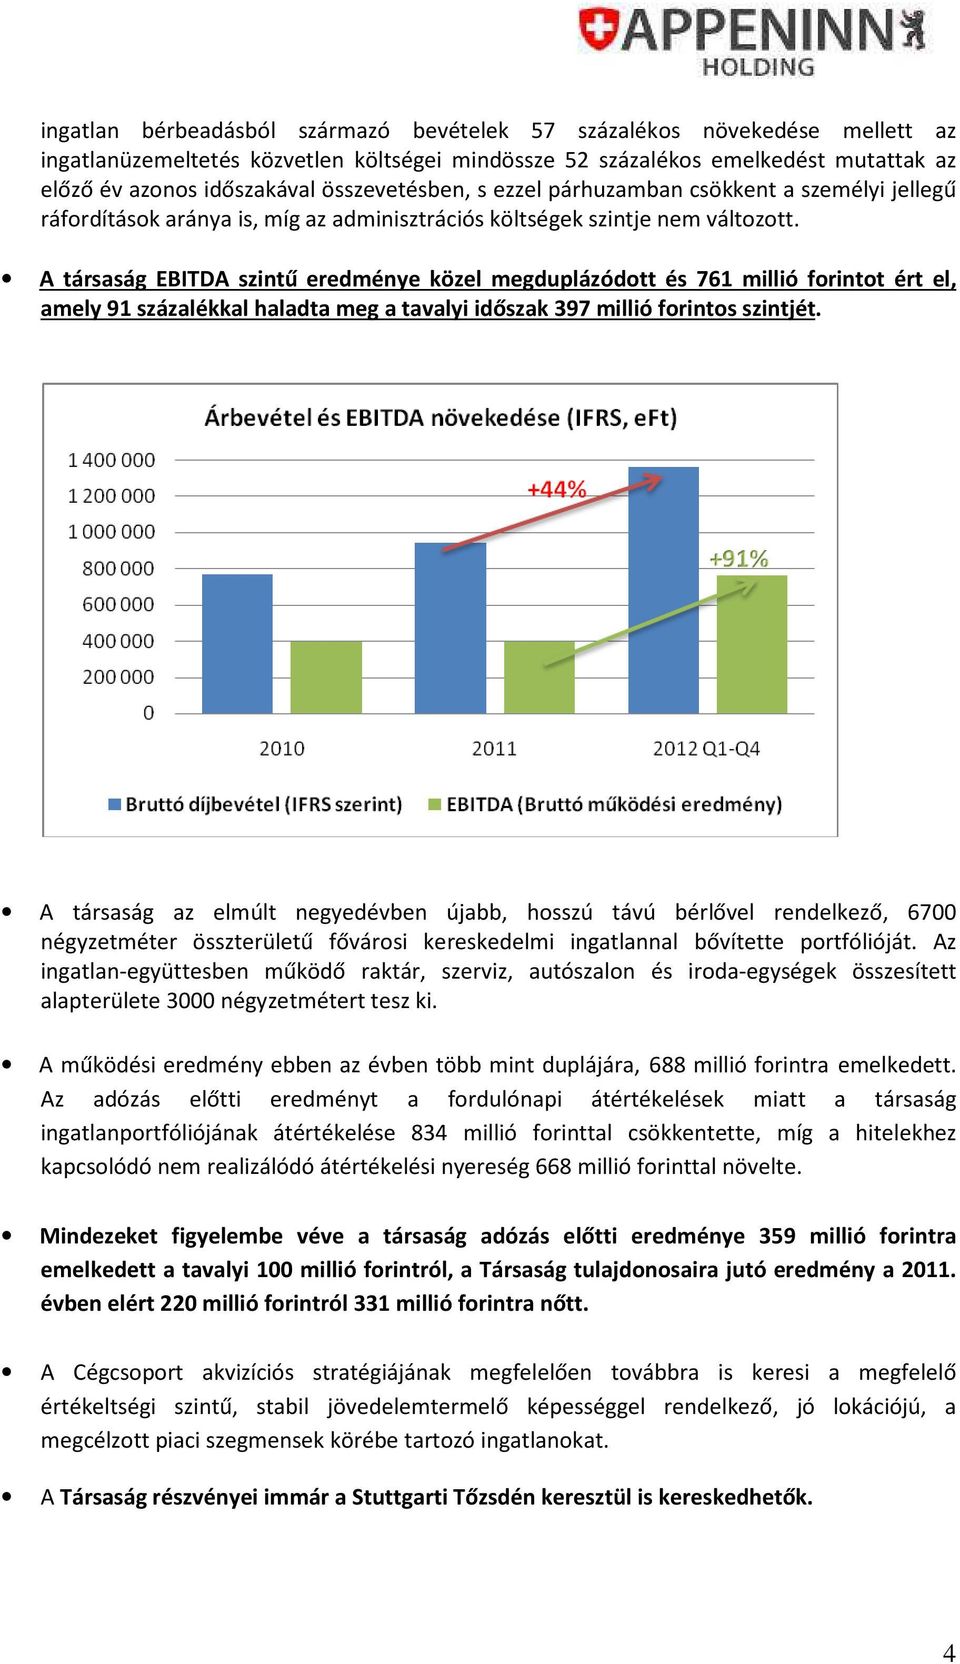 A társaság EBITDA szintű eredménye közel megduplázódott és 761 millió forintot ért el, amely 91 százalékkal haladta meg a tavalyi időszak 397 millió forintos szintjét.